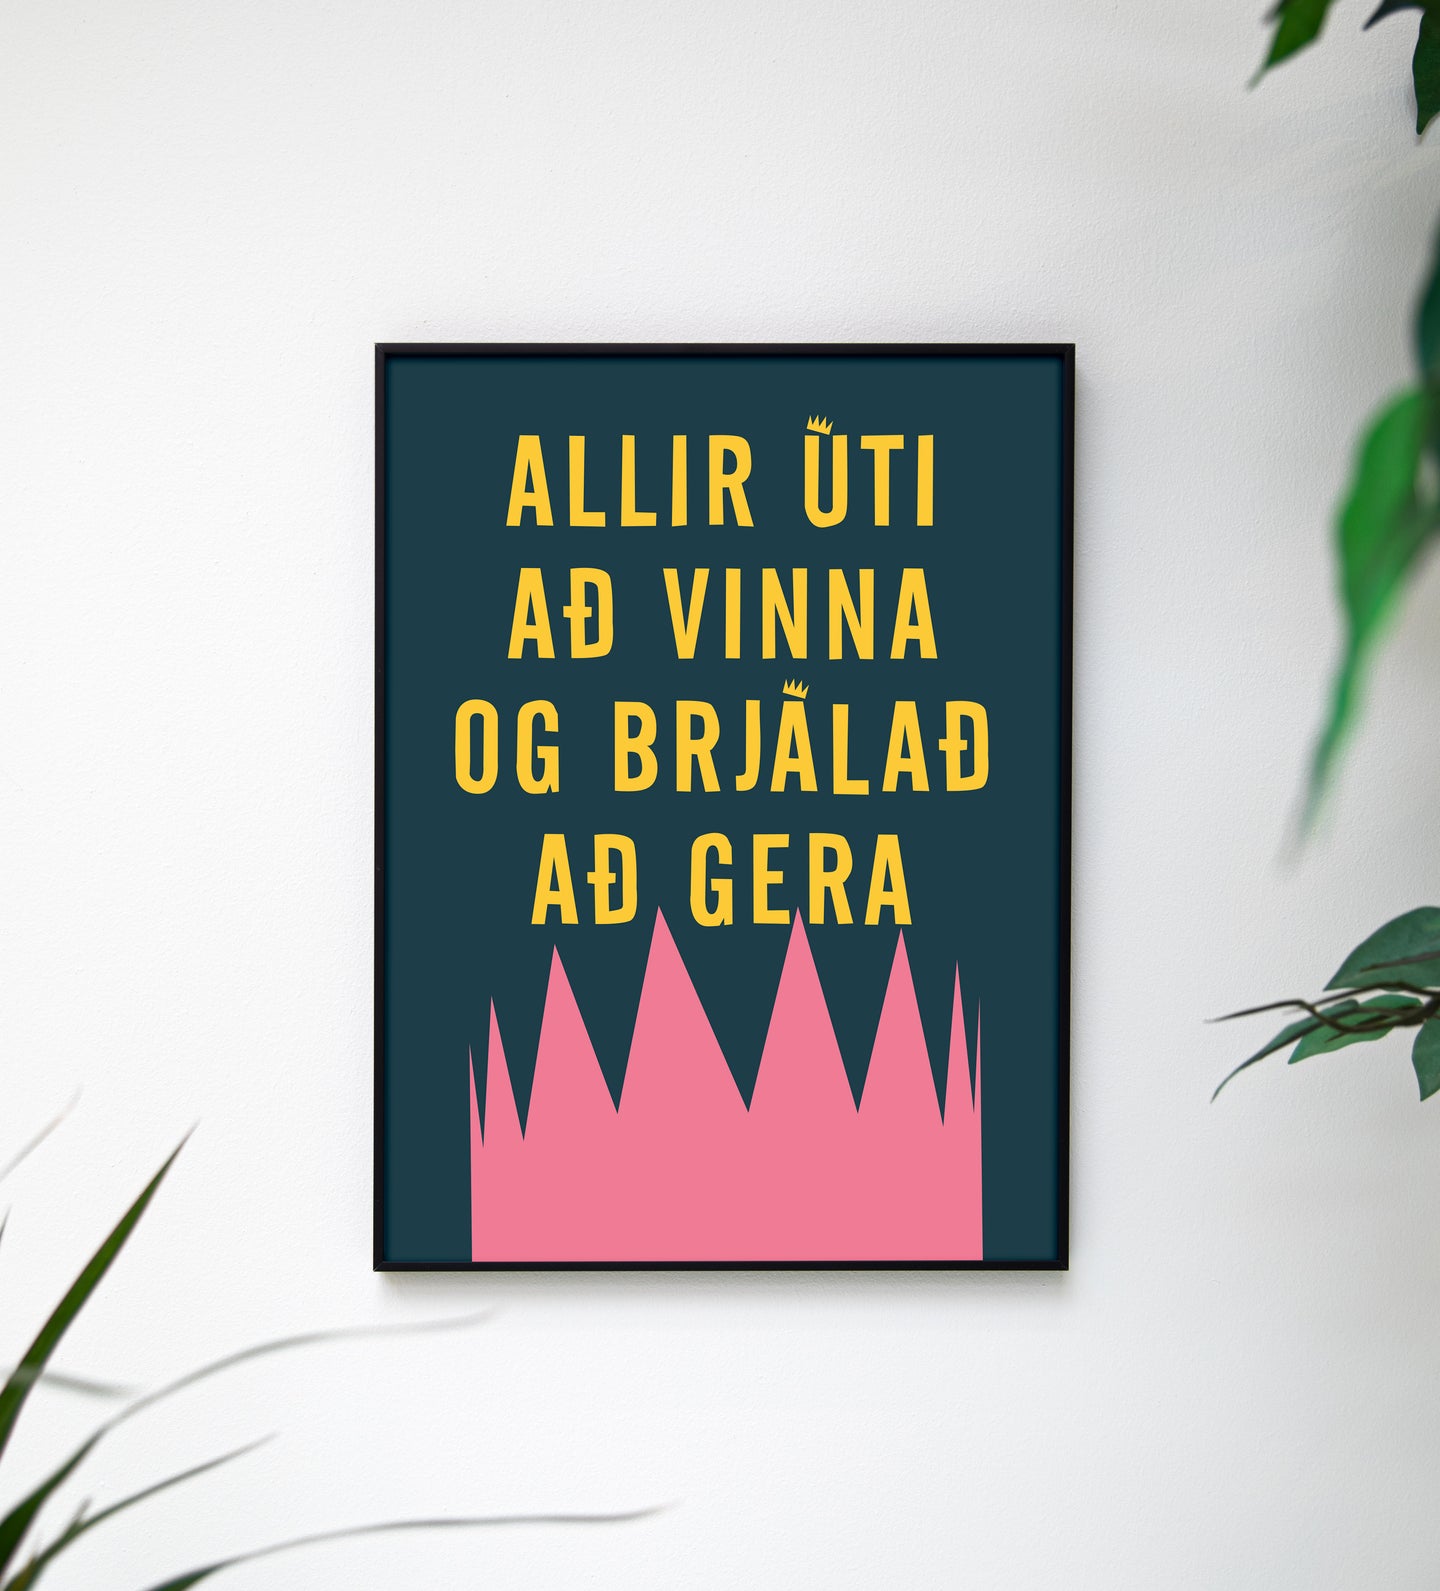 Allir úti að vinna og brjálað að gera